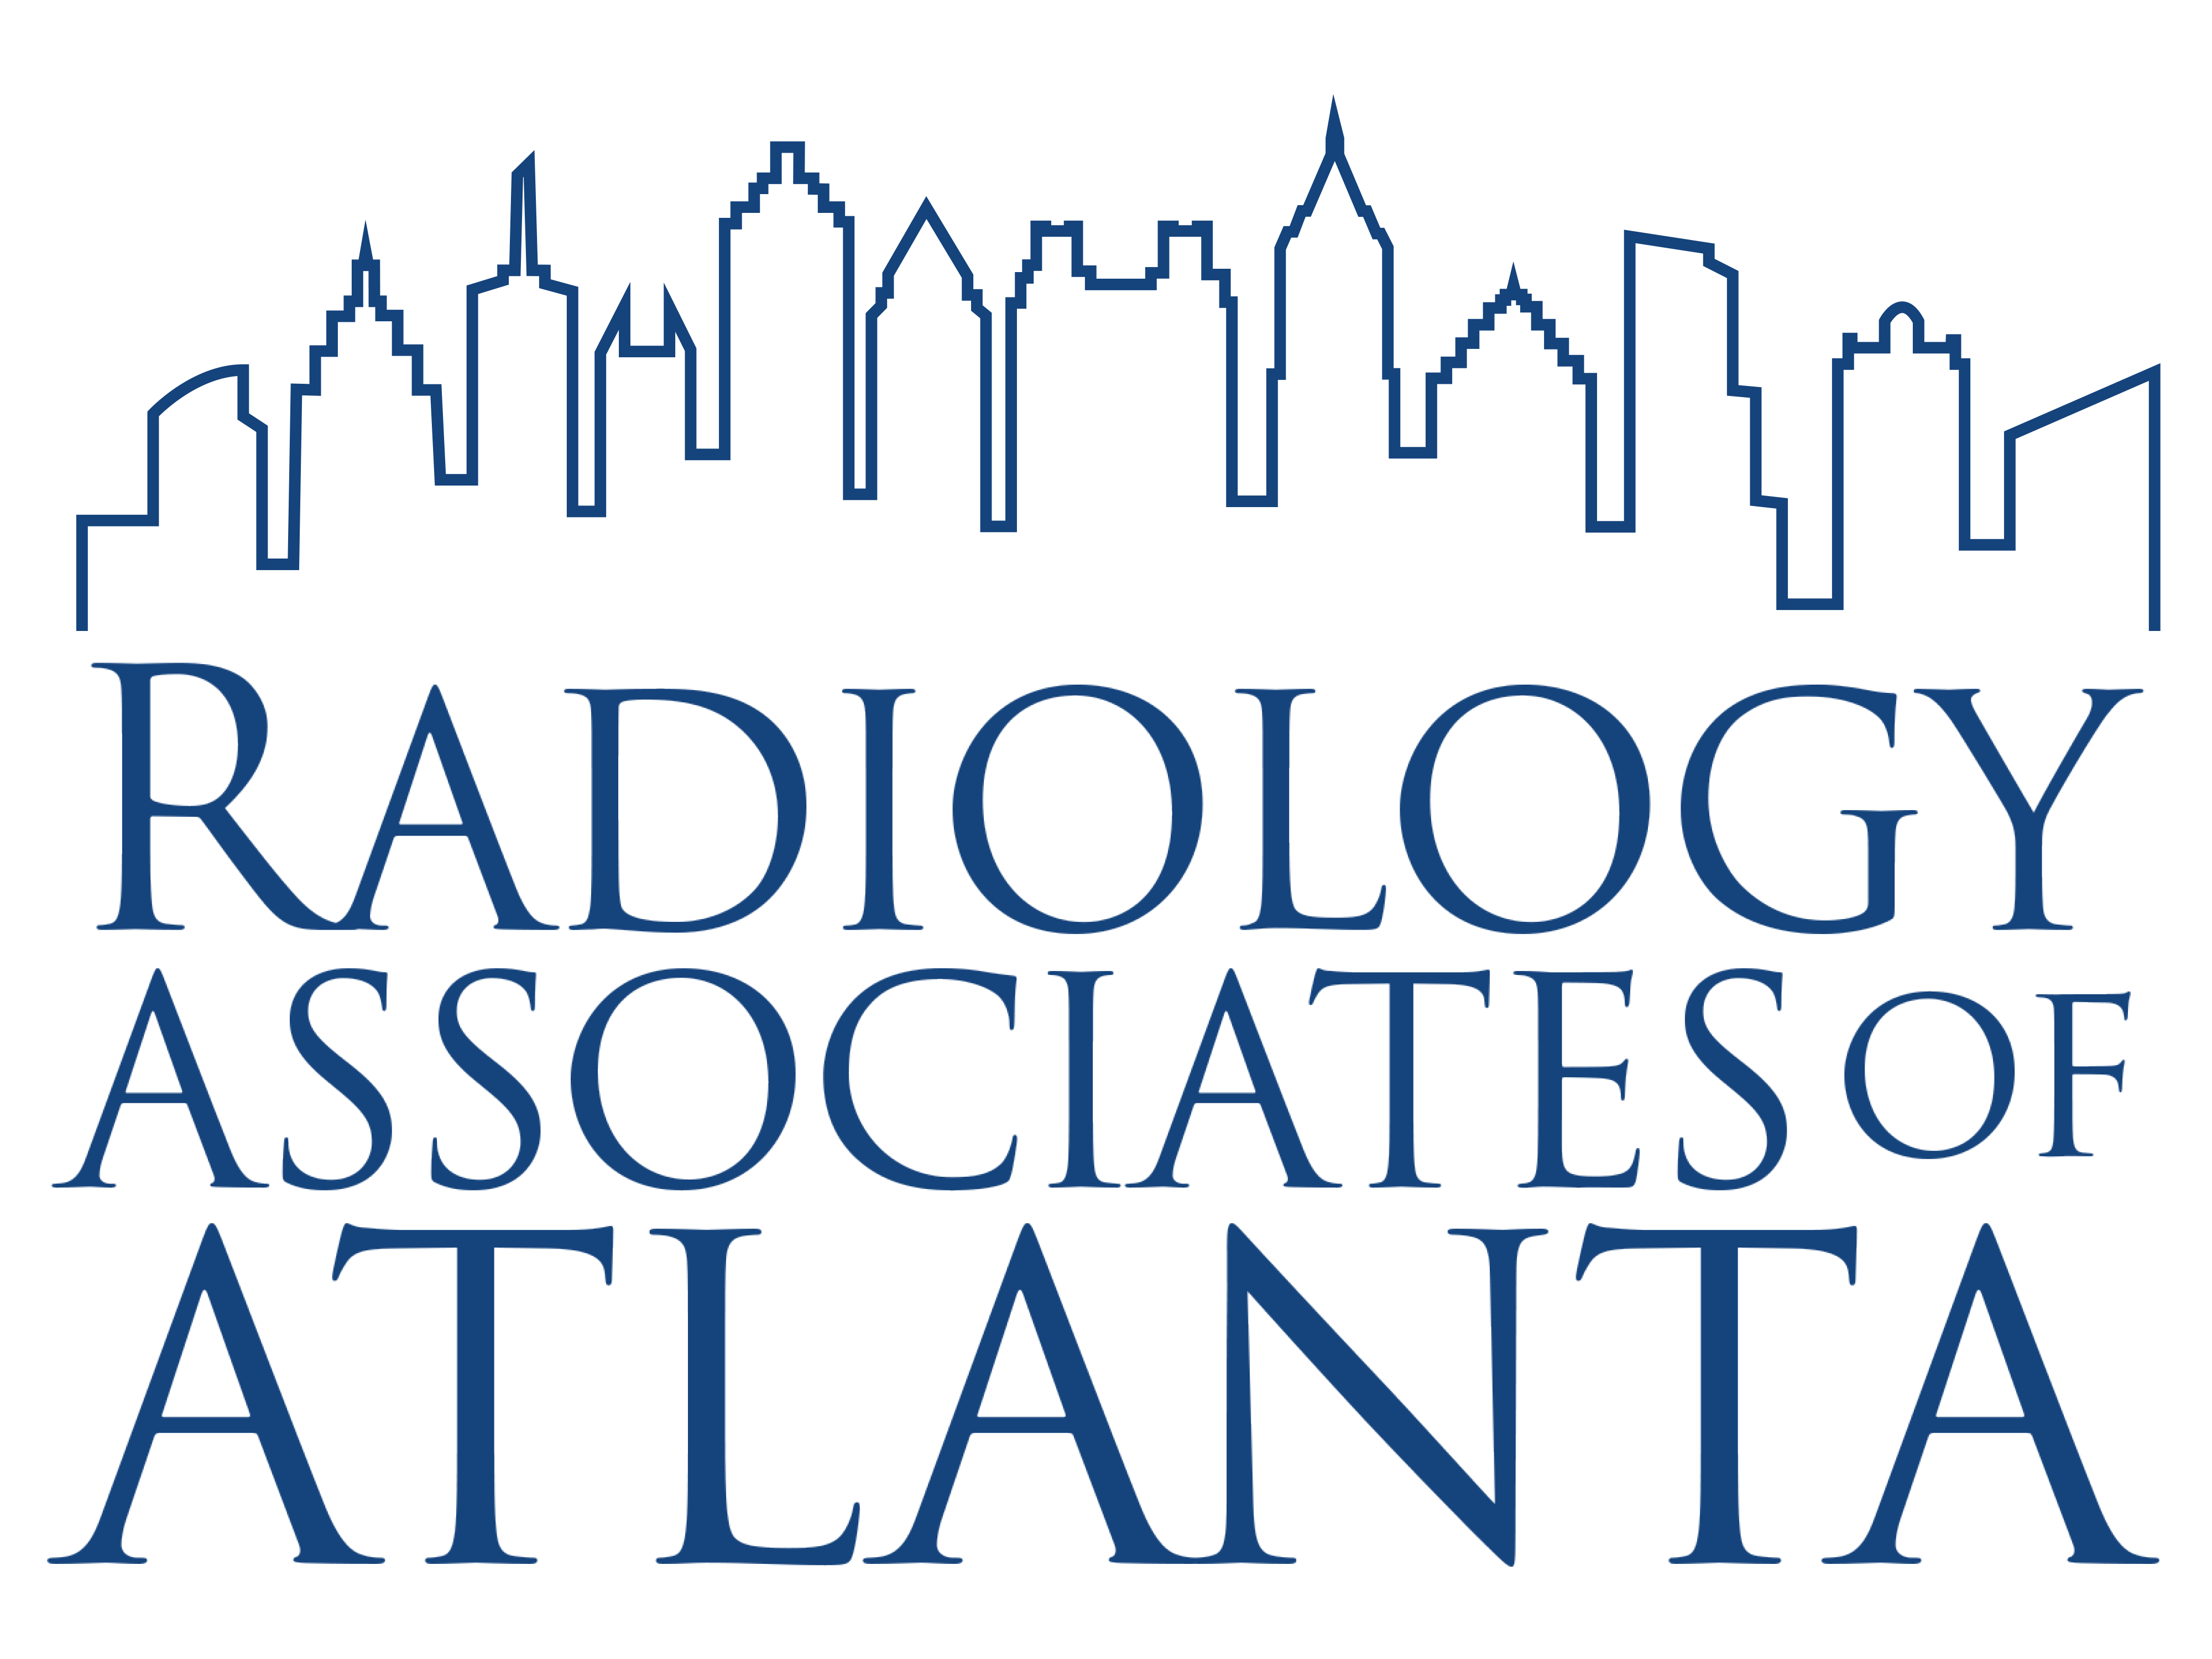 Radiology Association of Atlanta